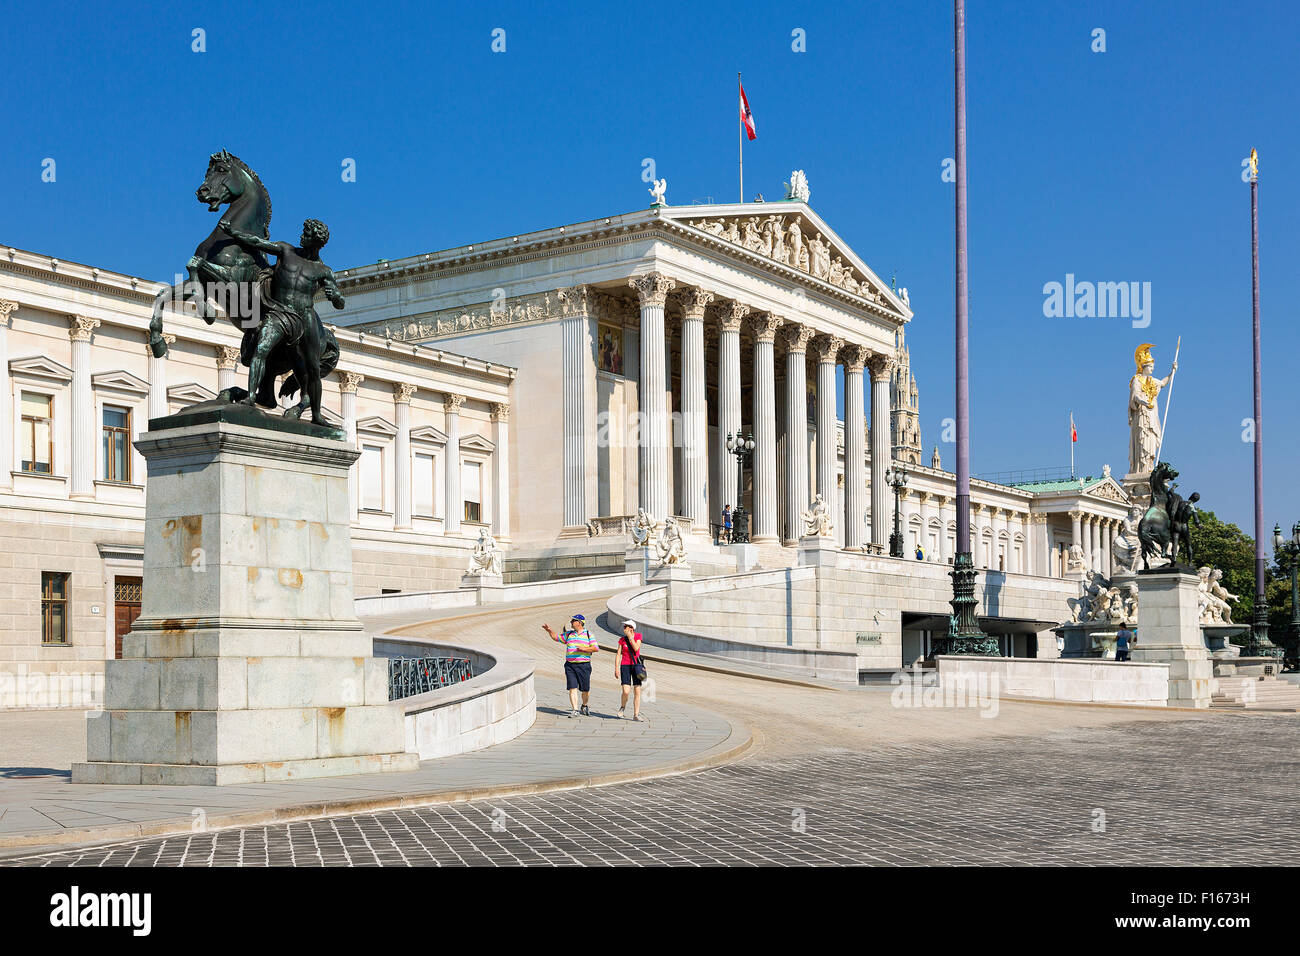 Austria, Vienna, parliament building Stock Photo